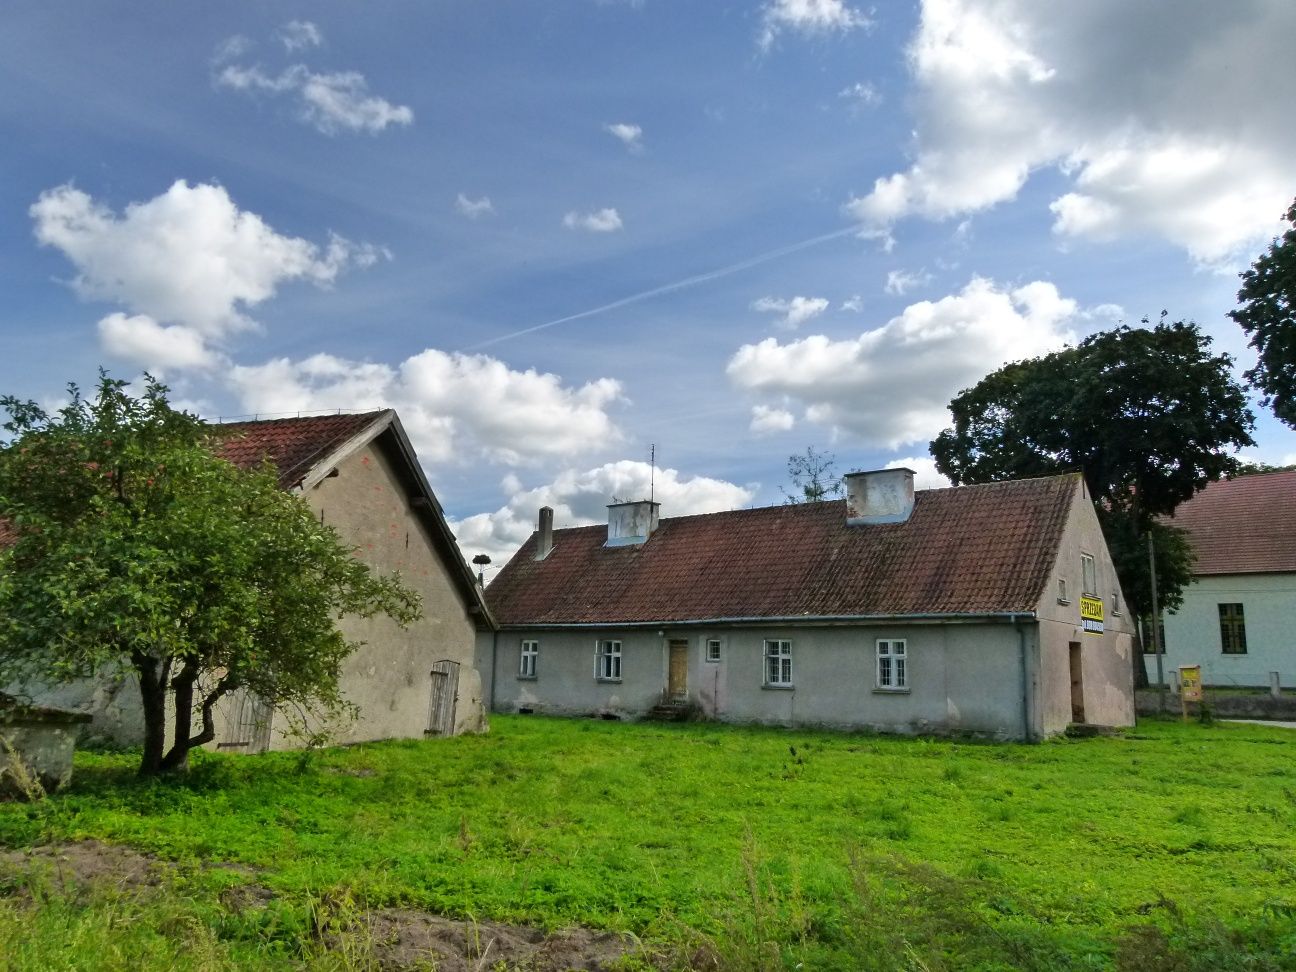 Dom dwurodzinny w klimatycznej mazurskiej wsi.